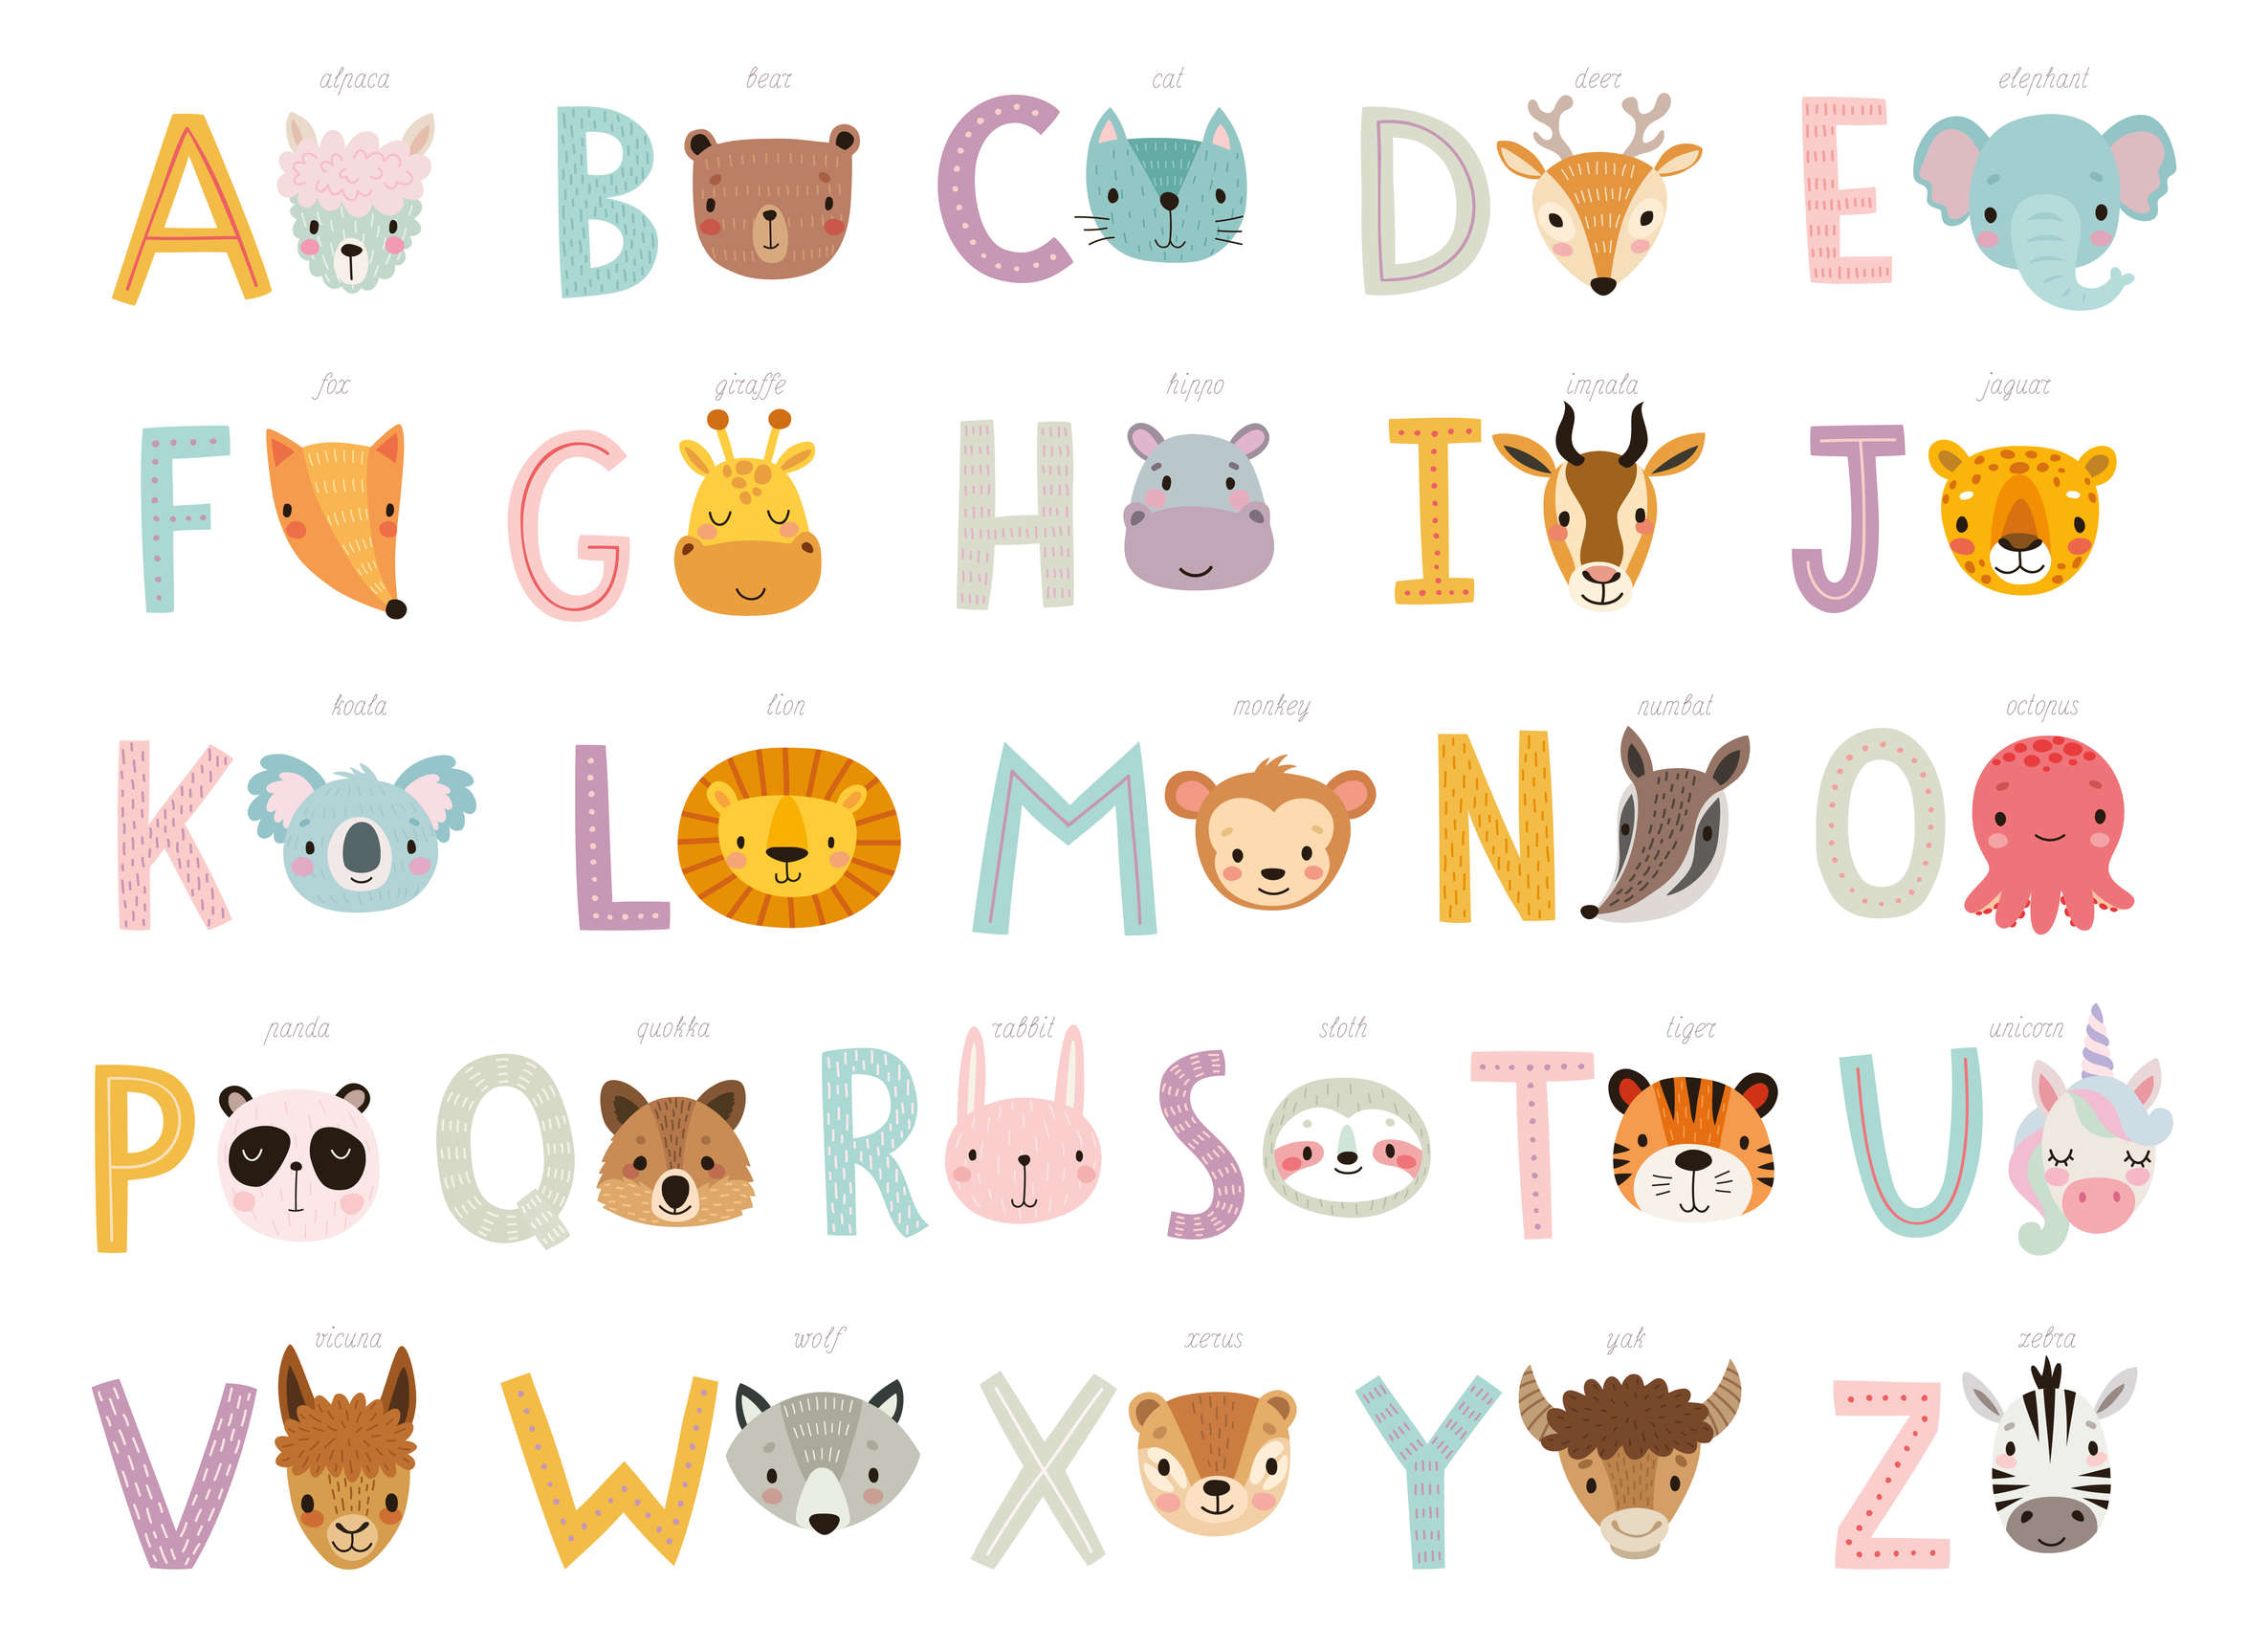             papiers peints à impression numérique ABC avec animaux et noms d'animaux - intissé lisse & légèrement brillant
        